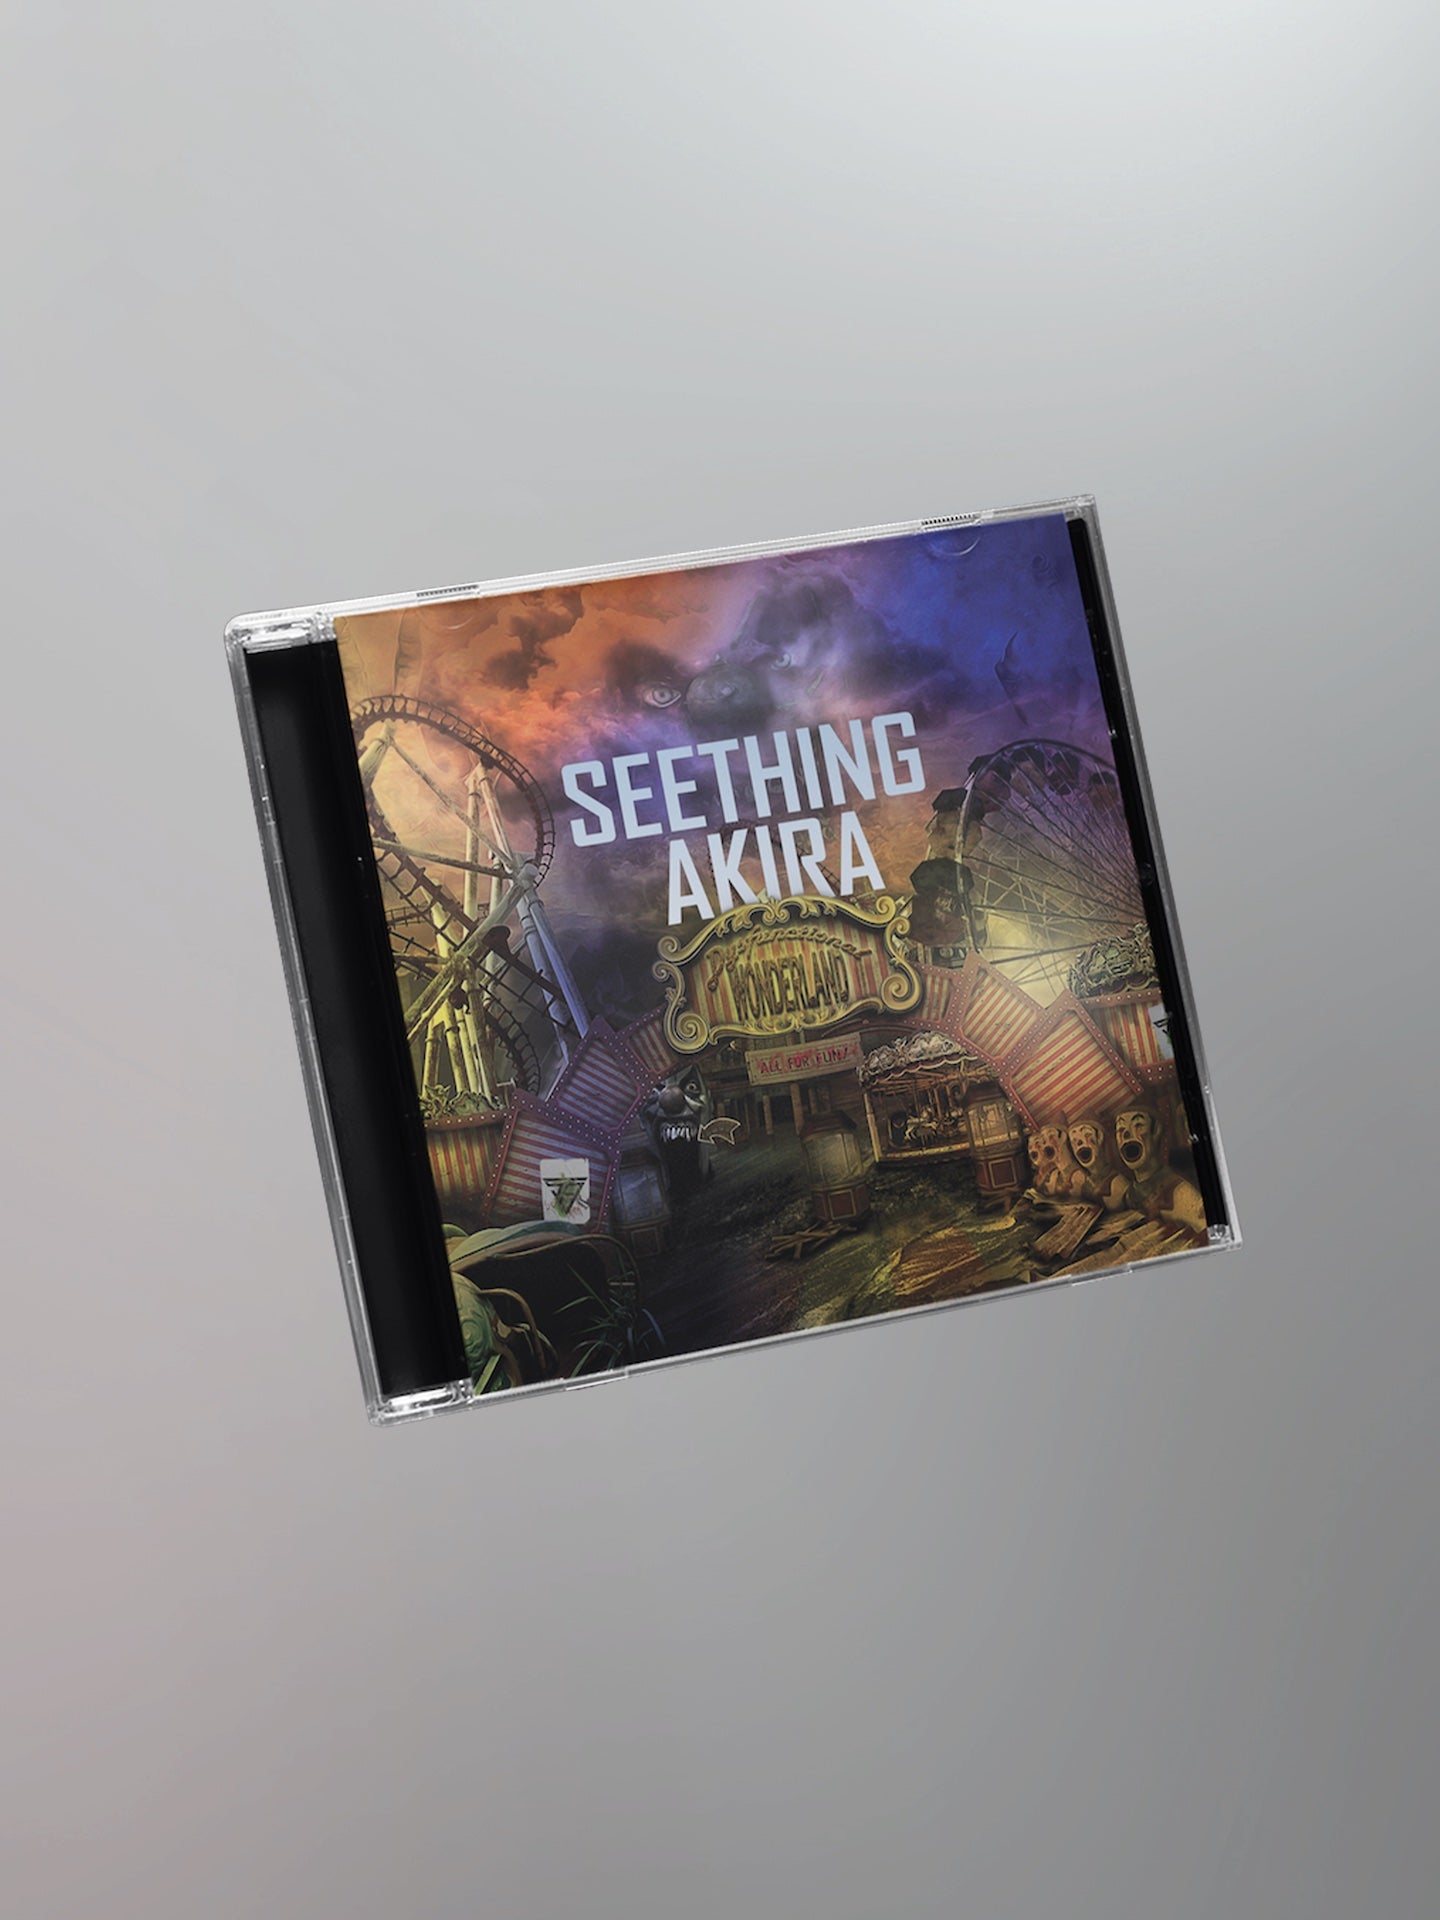 Seething Akira - Dysfunctional Wonderland CD